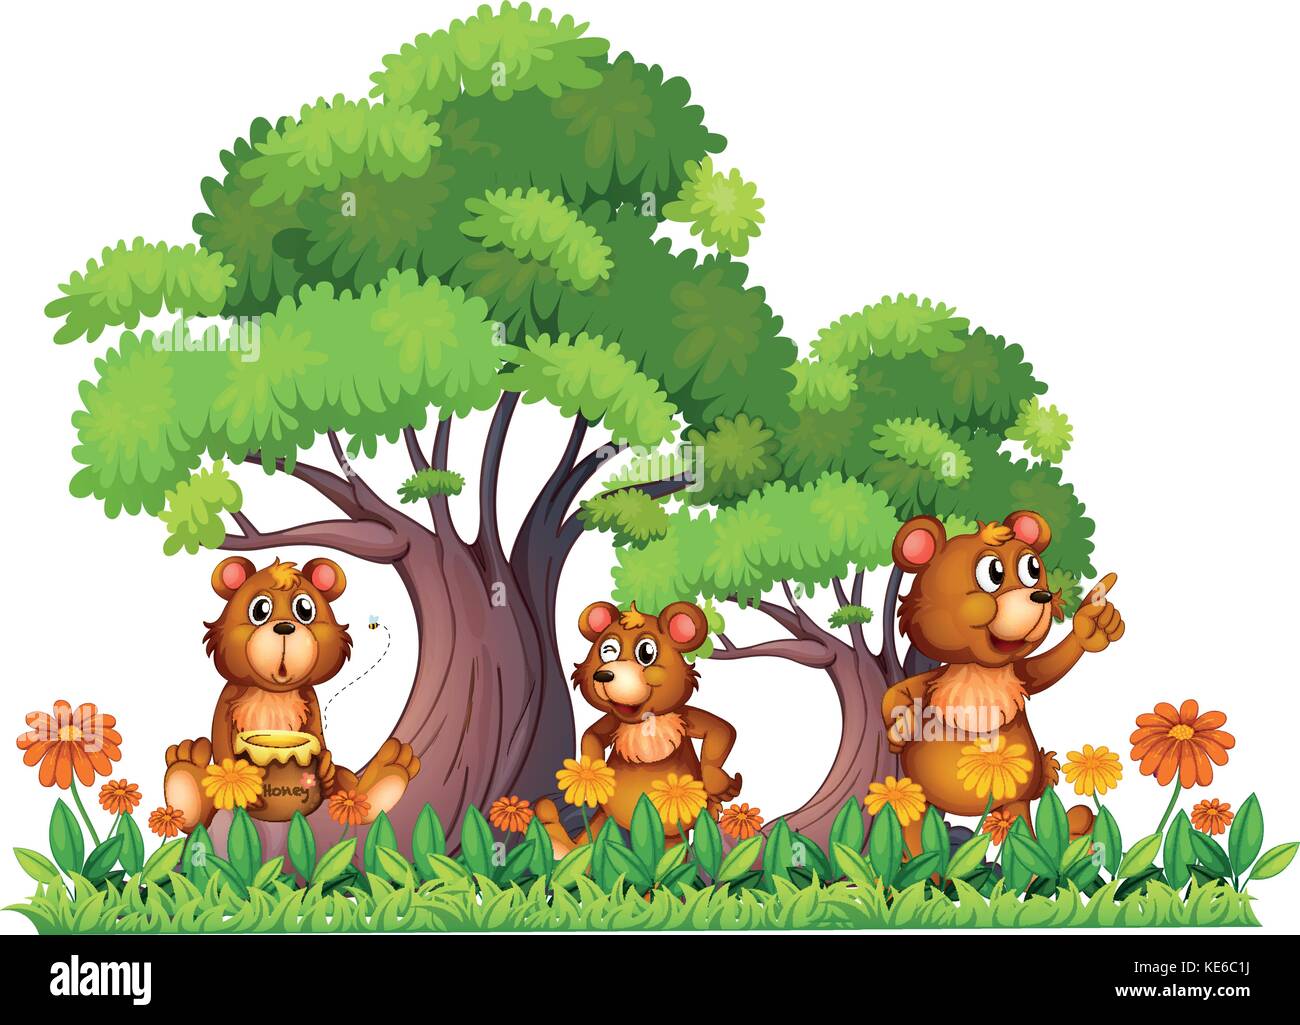 Three little bears in the garden illustration Stock Vector